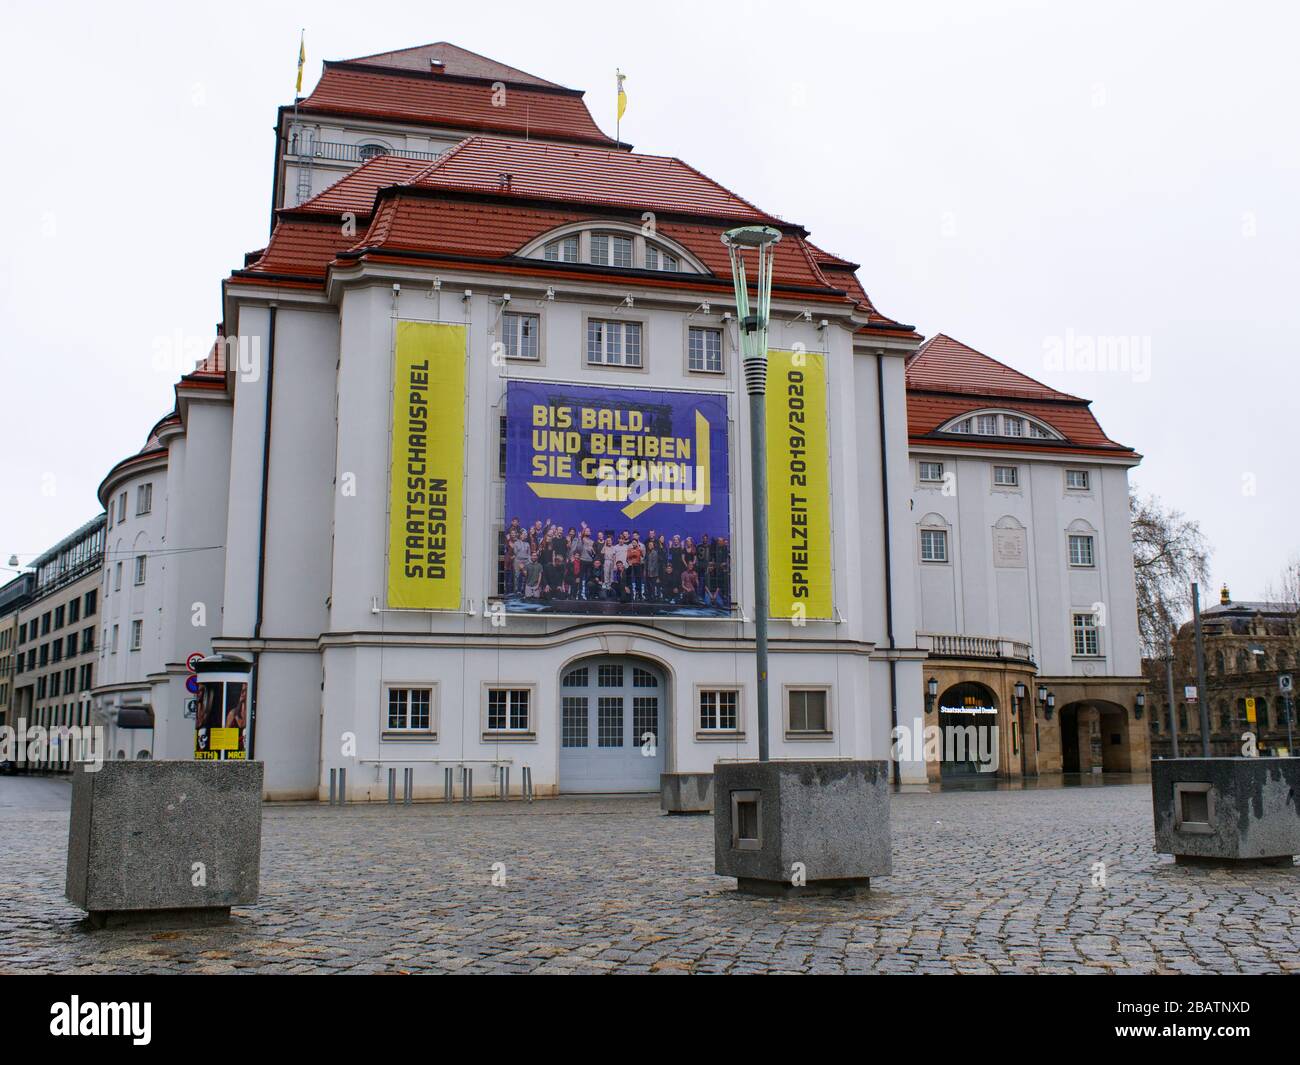 Schauspielhaus di Dresda während Coronavirus Lockdown COVID-19 Teatro Staatsschauspiel 2020 bei Regen Foto Stock